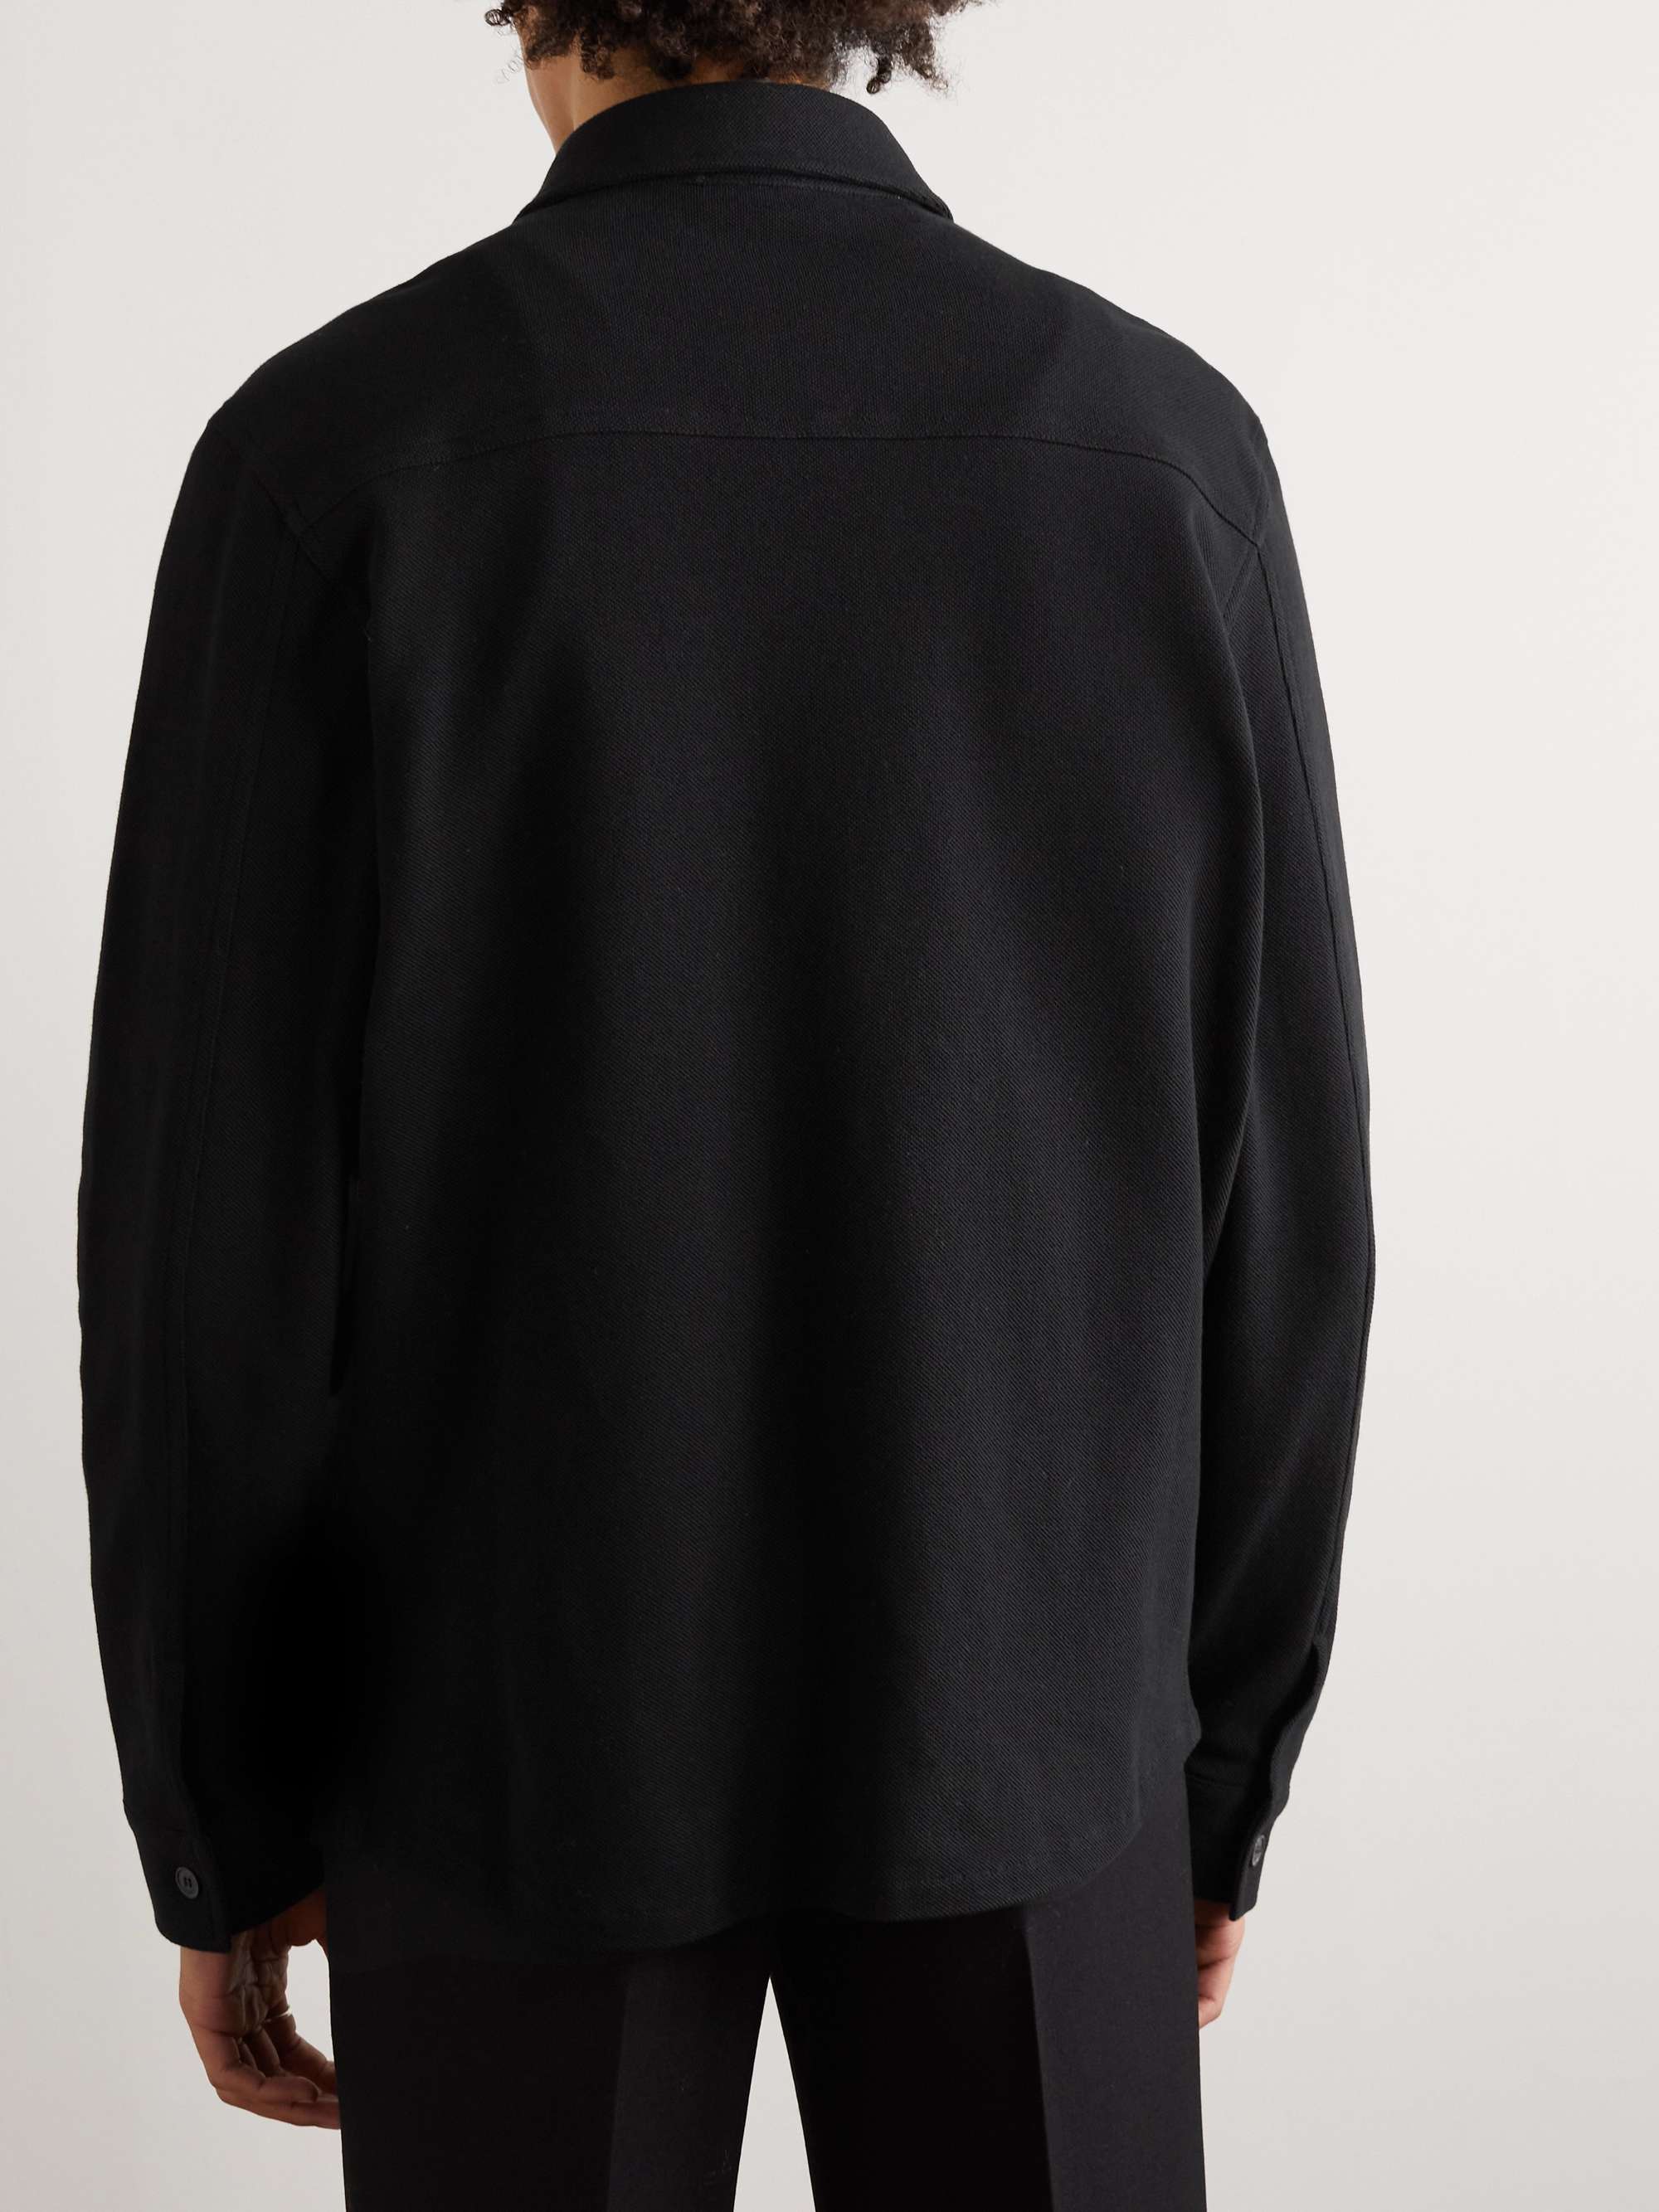 SAINT LAURENT Cotton-Piqué Shirt for Men | MR PORTER